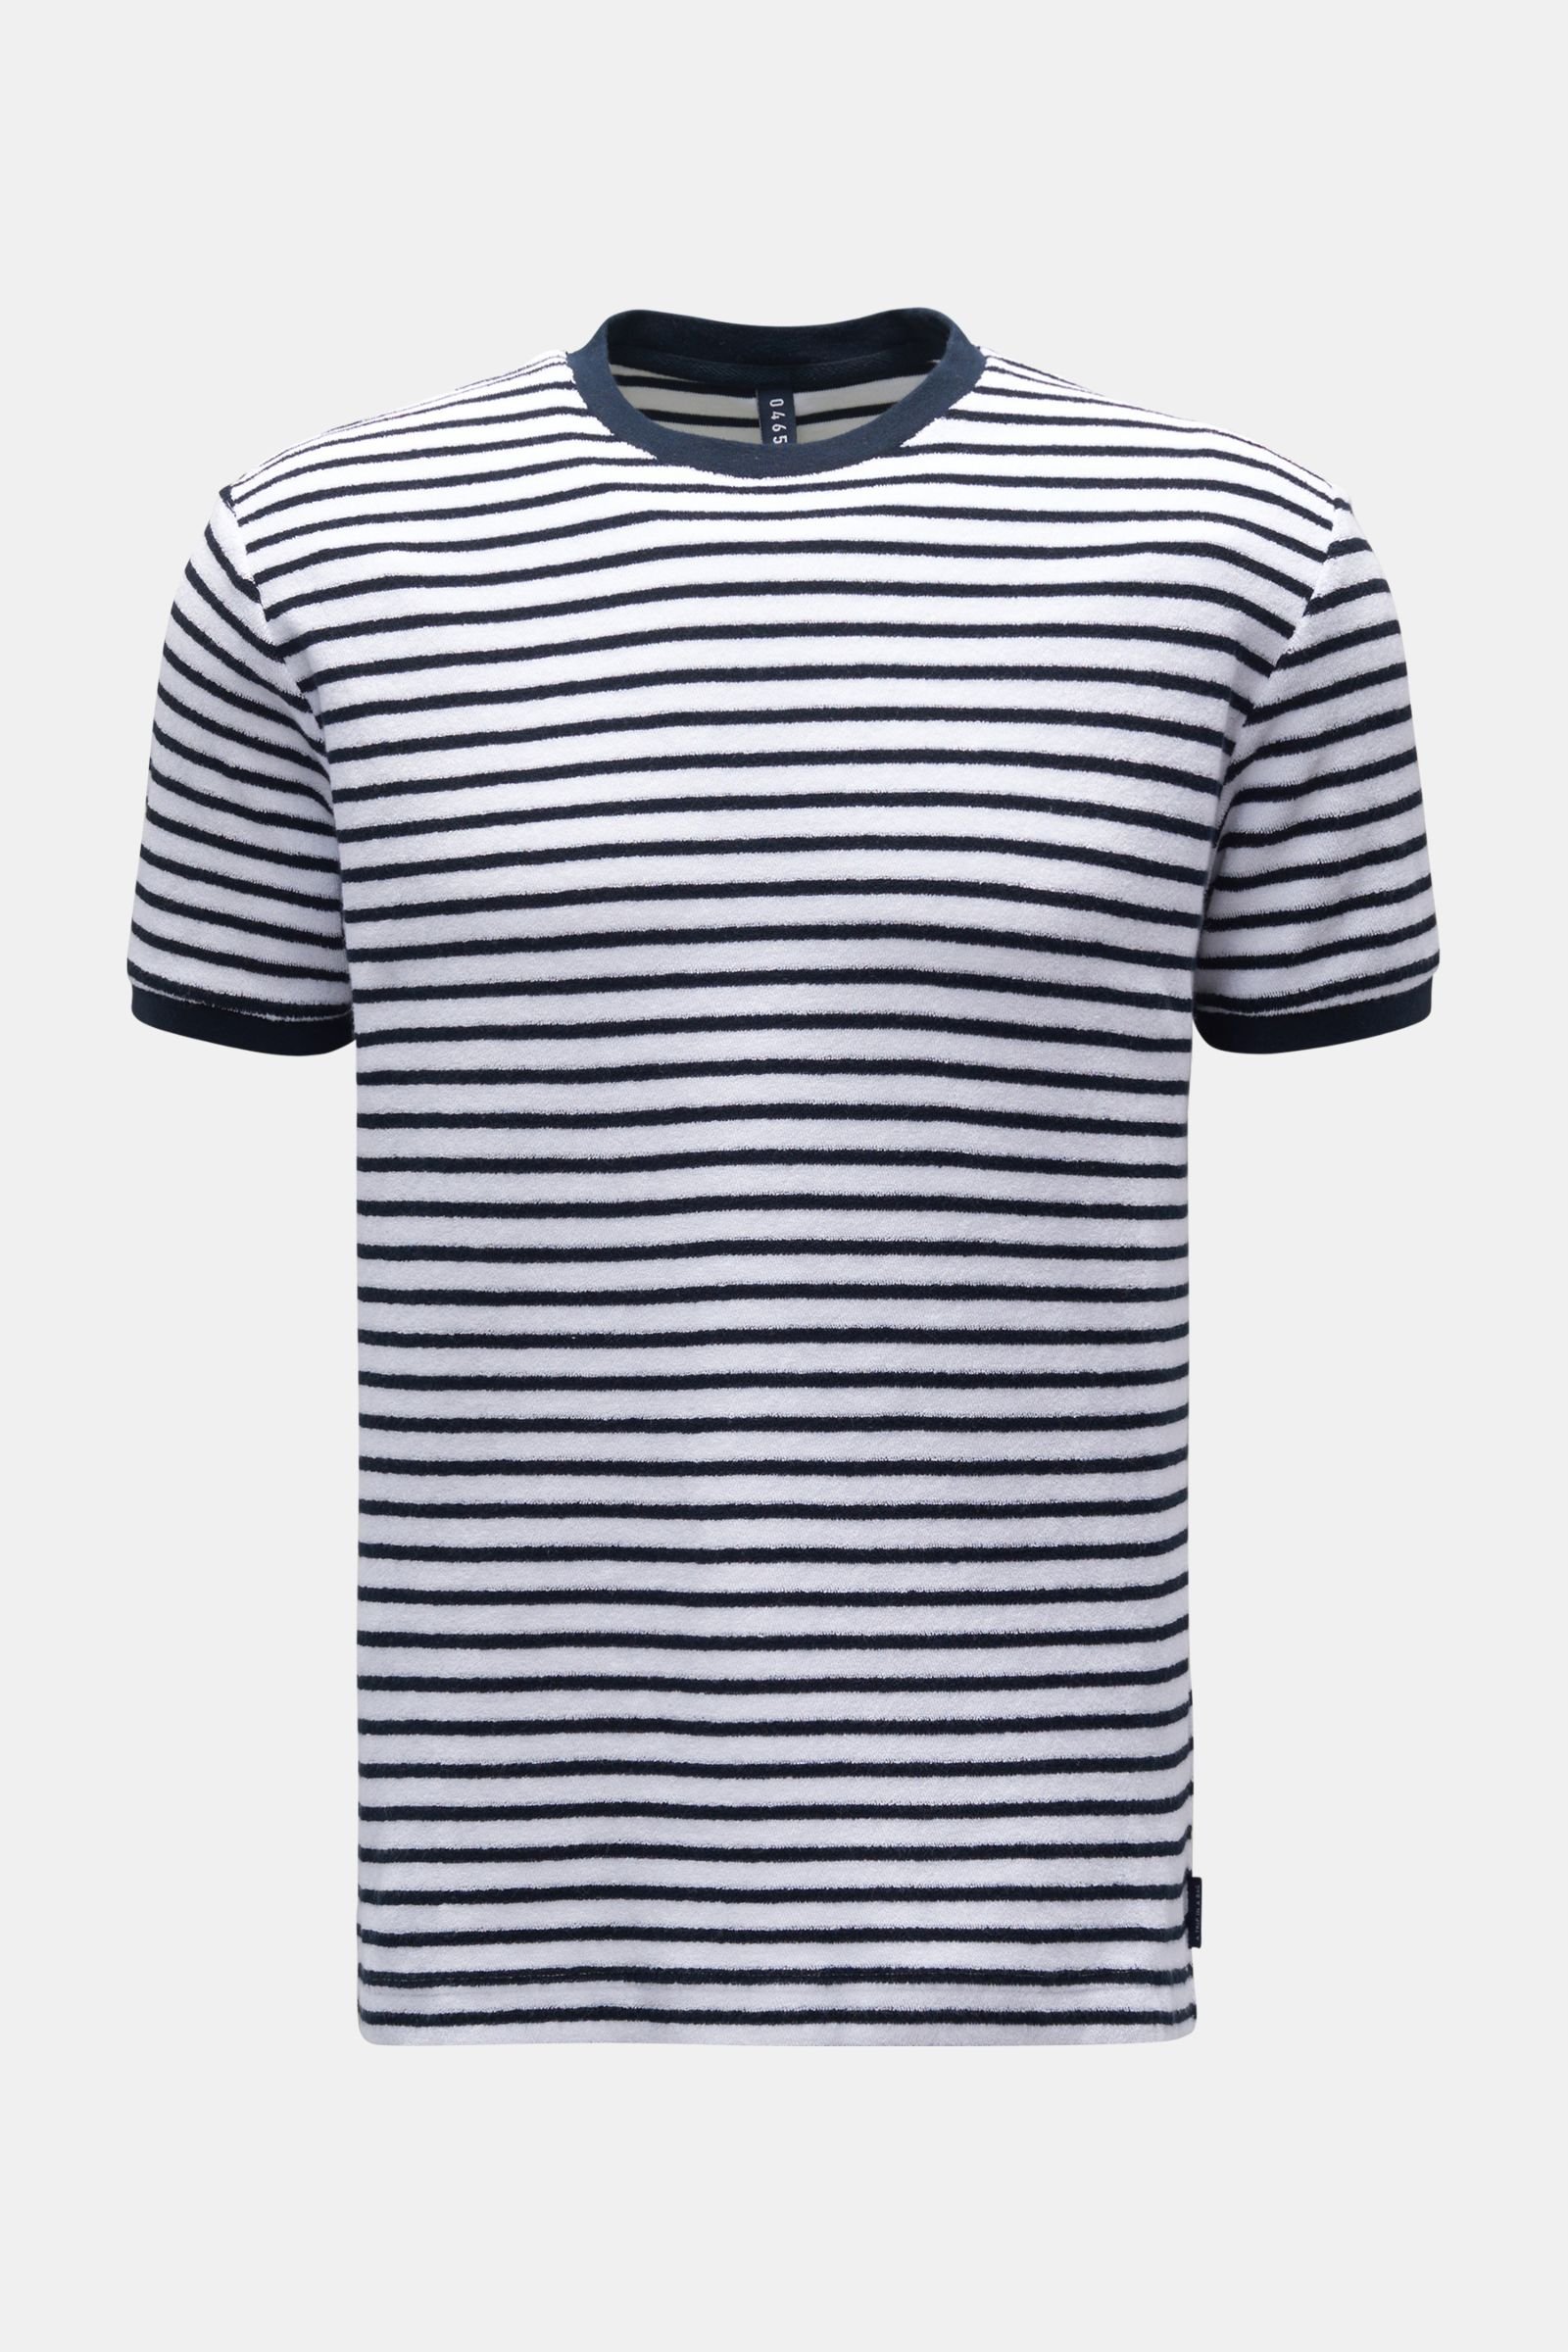 Frottee Rundhals-T-Shirt 'Terry Stripe Tee' navy/weiß gestreift